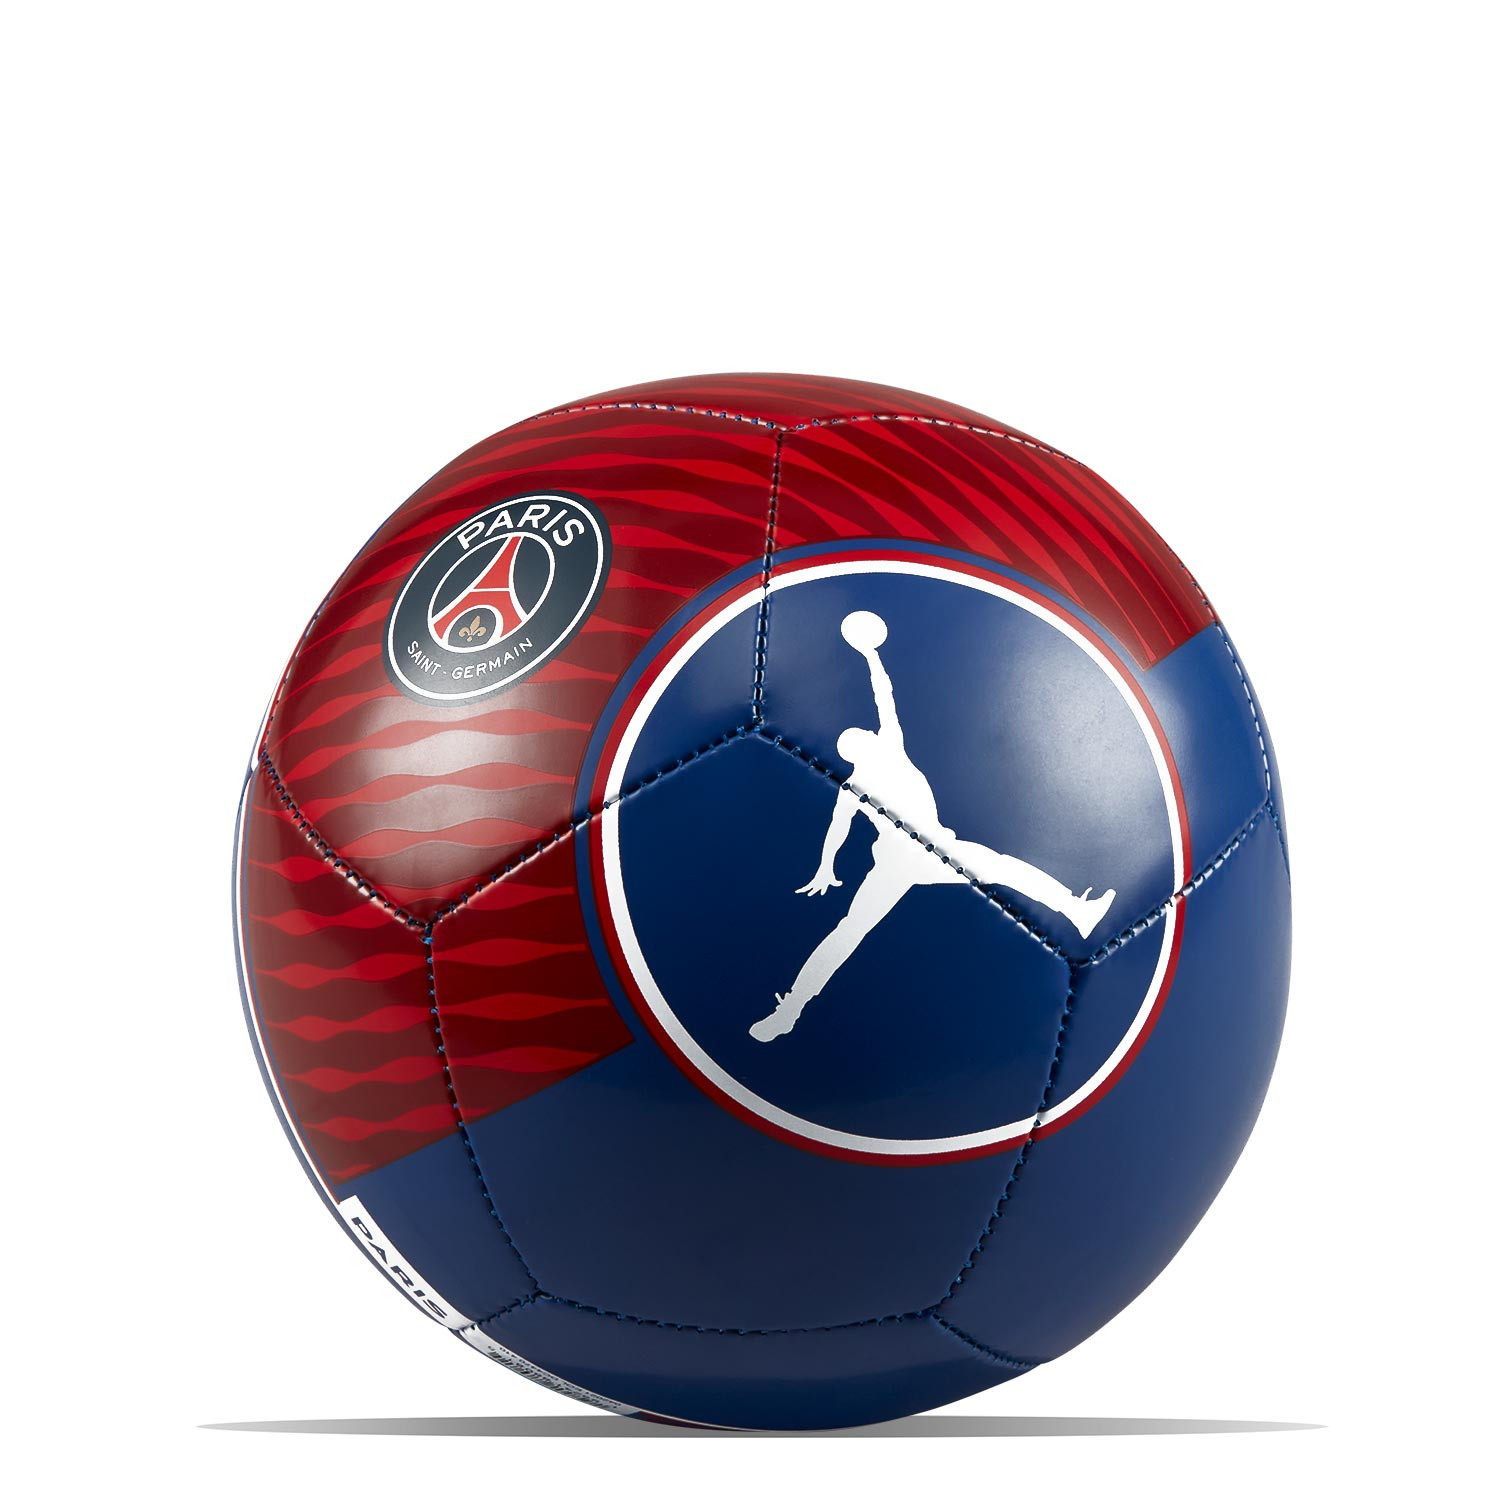 Balón Nike PSG x Jordan Skills mini azul rojo | futbolmania